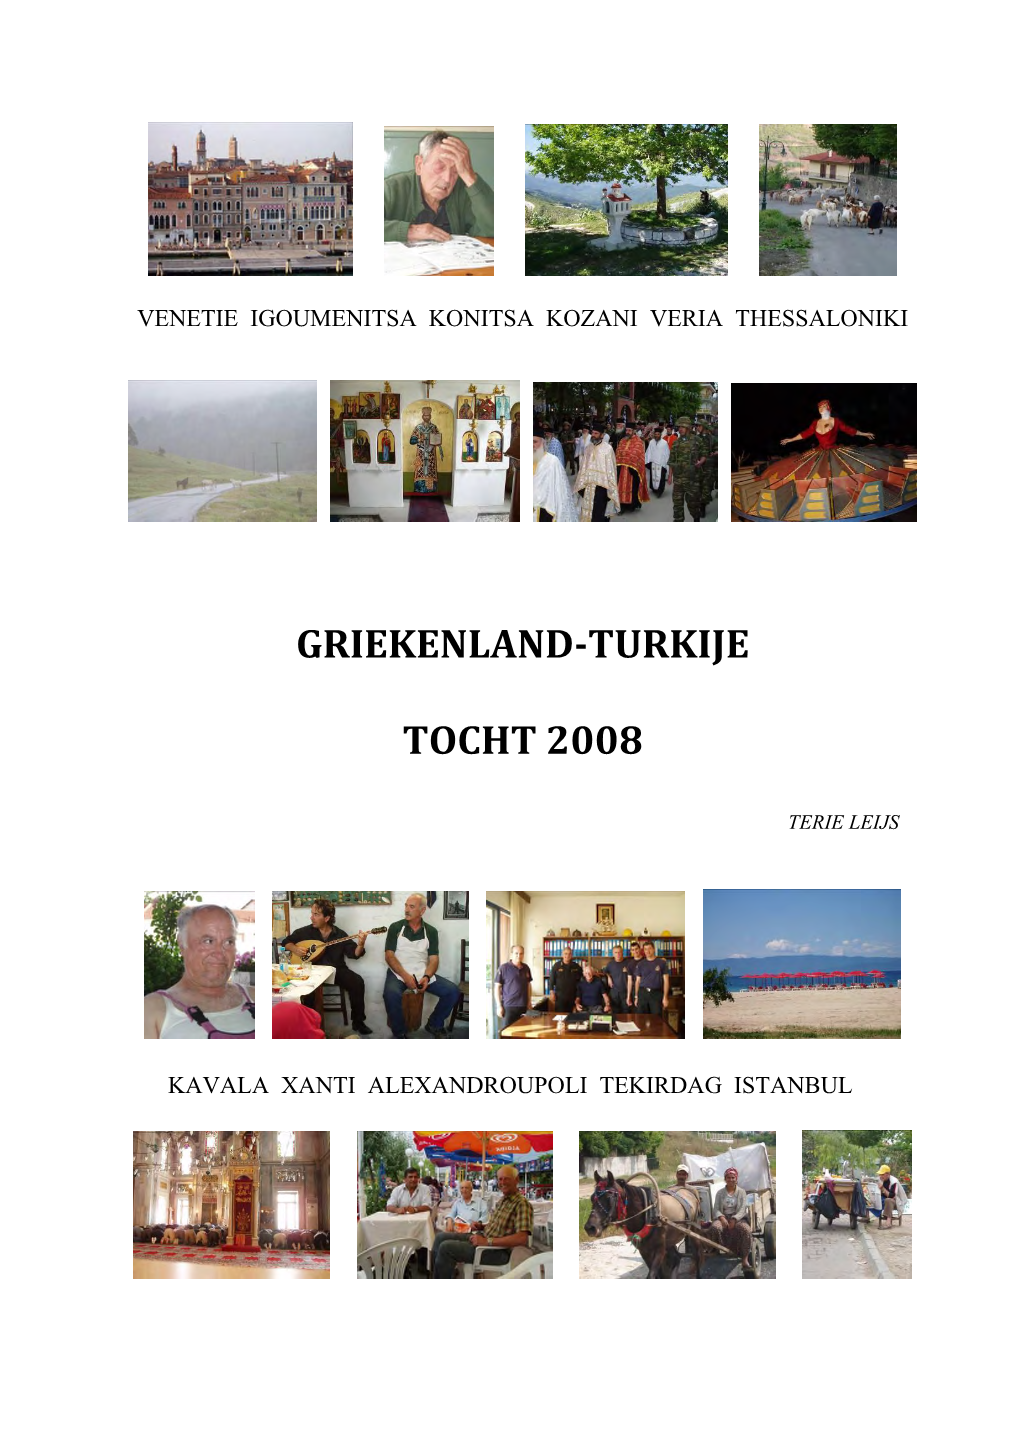 Griekenland-Turkije Tocht 2008